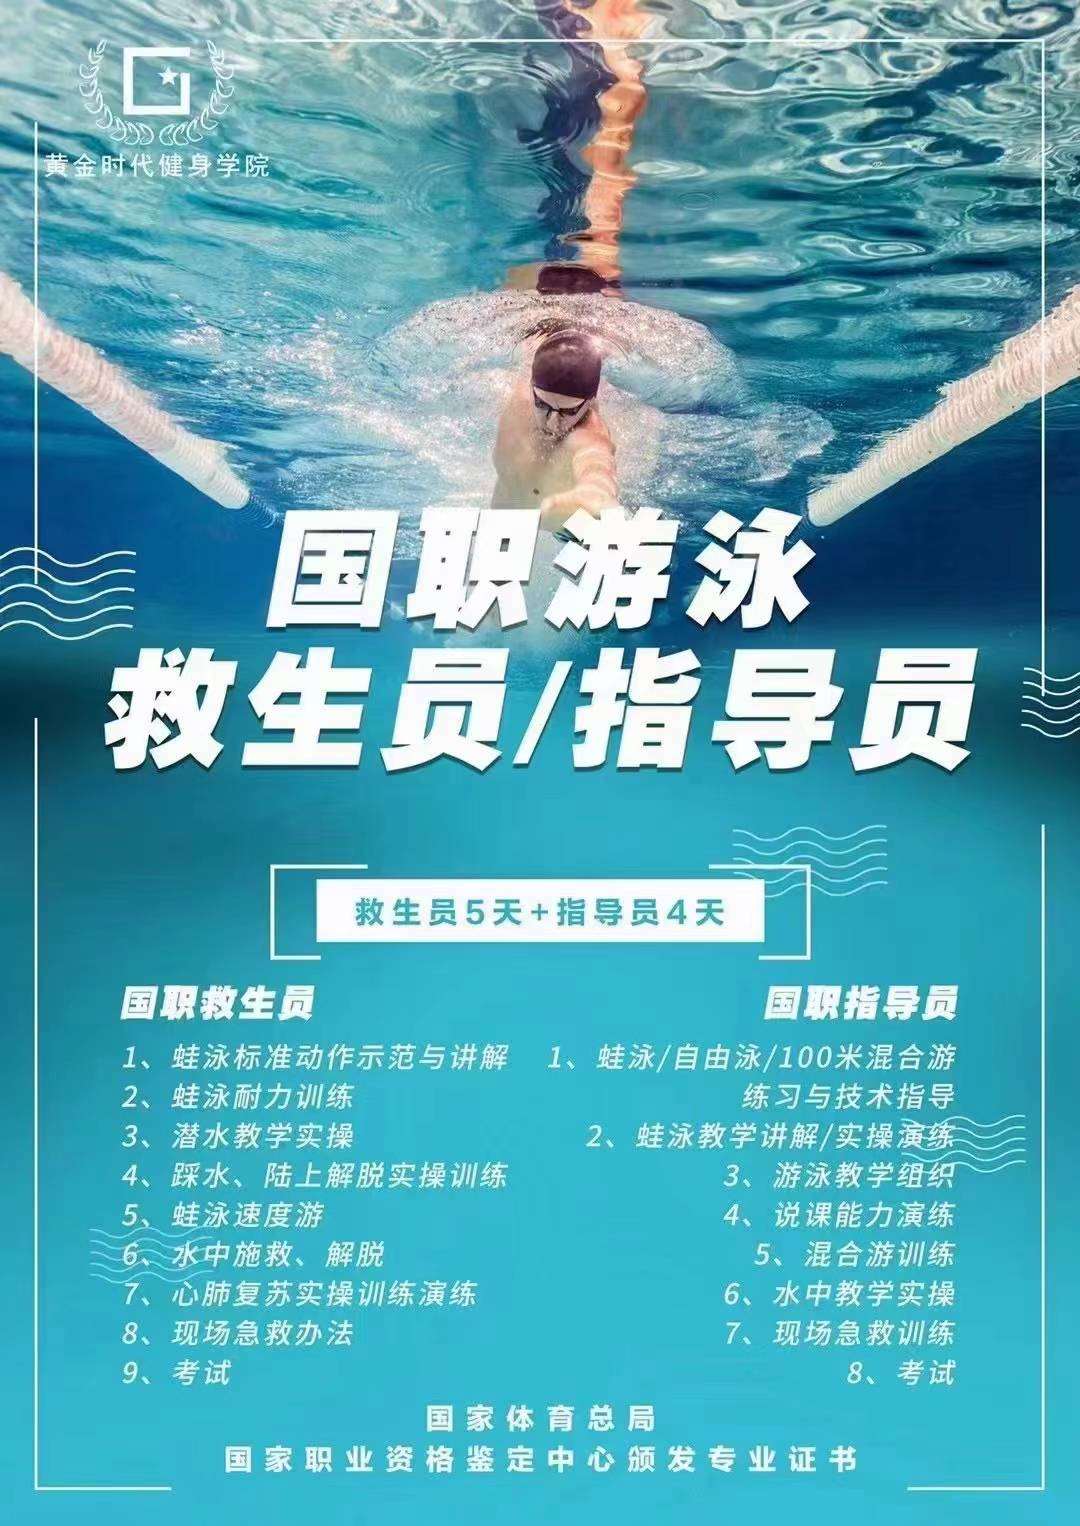 郑州游泳救生员培训班